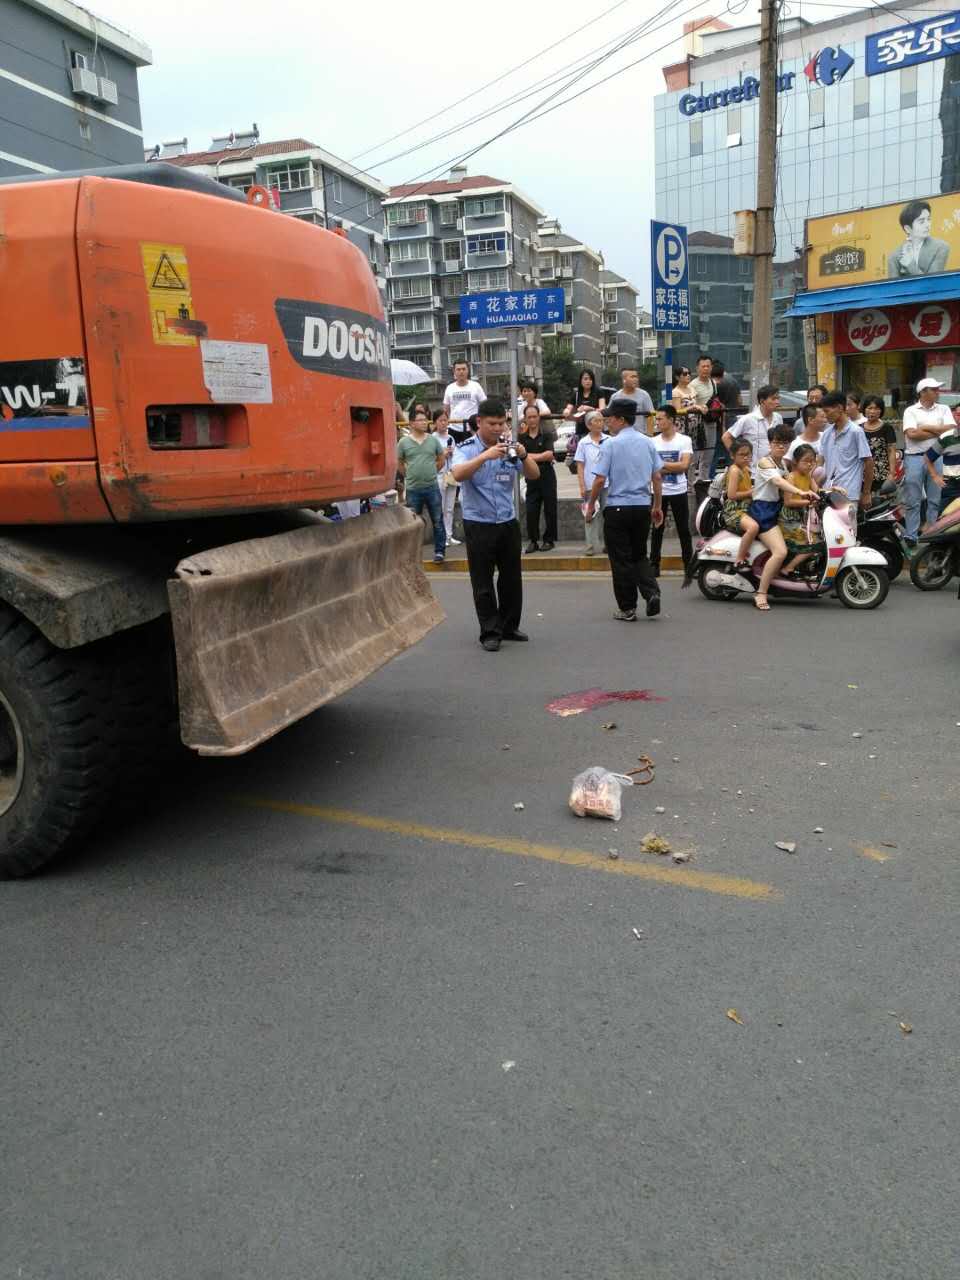 8月21日南京市发生一起挖掘机上路安全事故 致一男子被碾压死亡